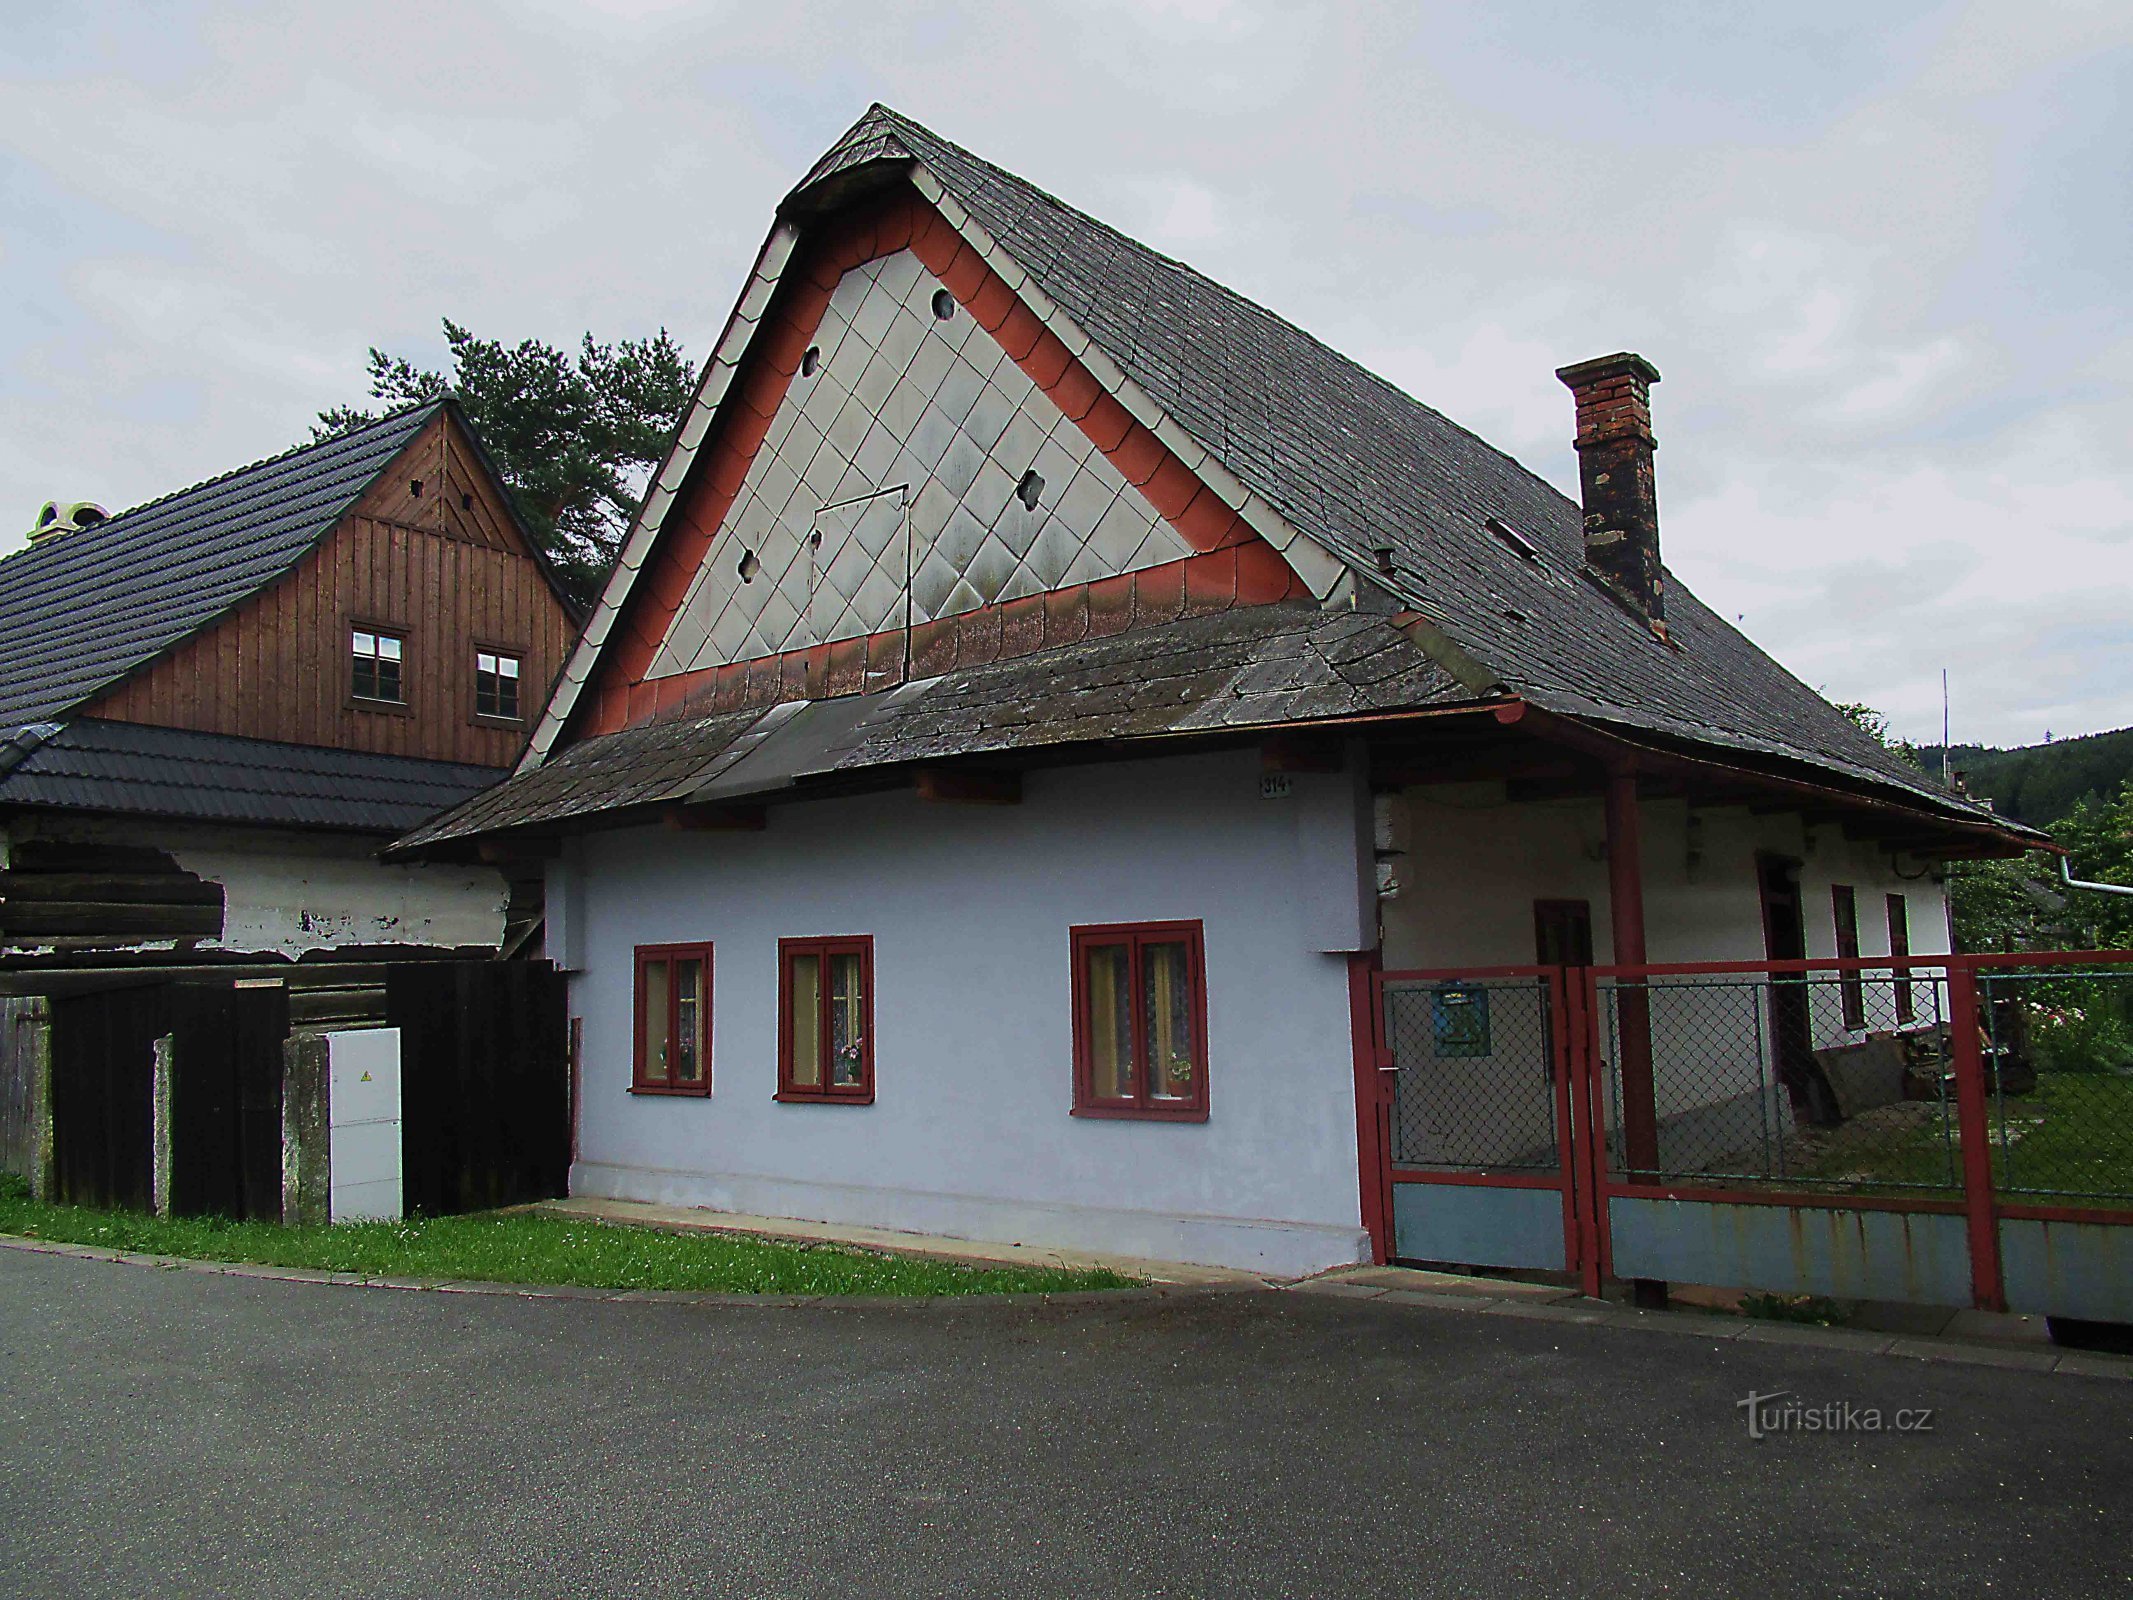 Tkalcovské domky - lidové stavby z 19. století v Ústí nad Orlicí